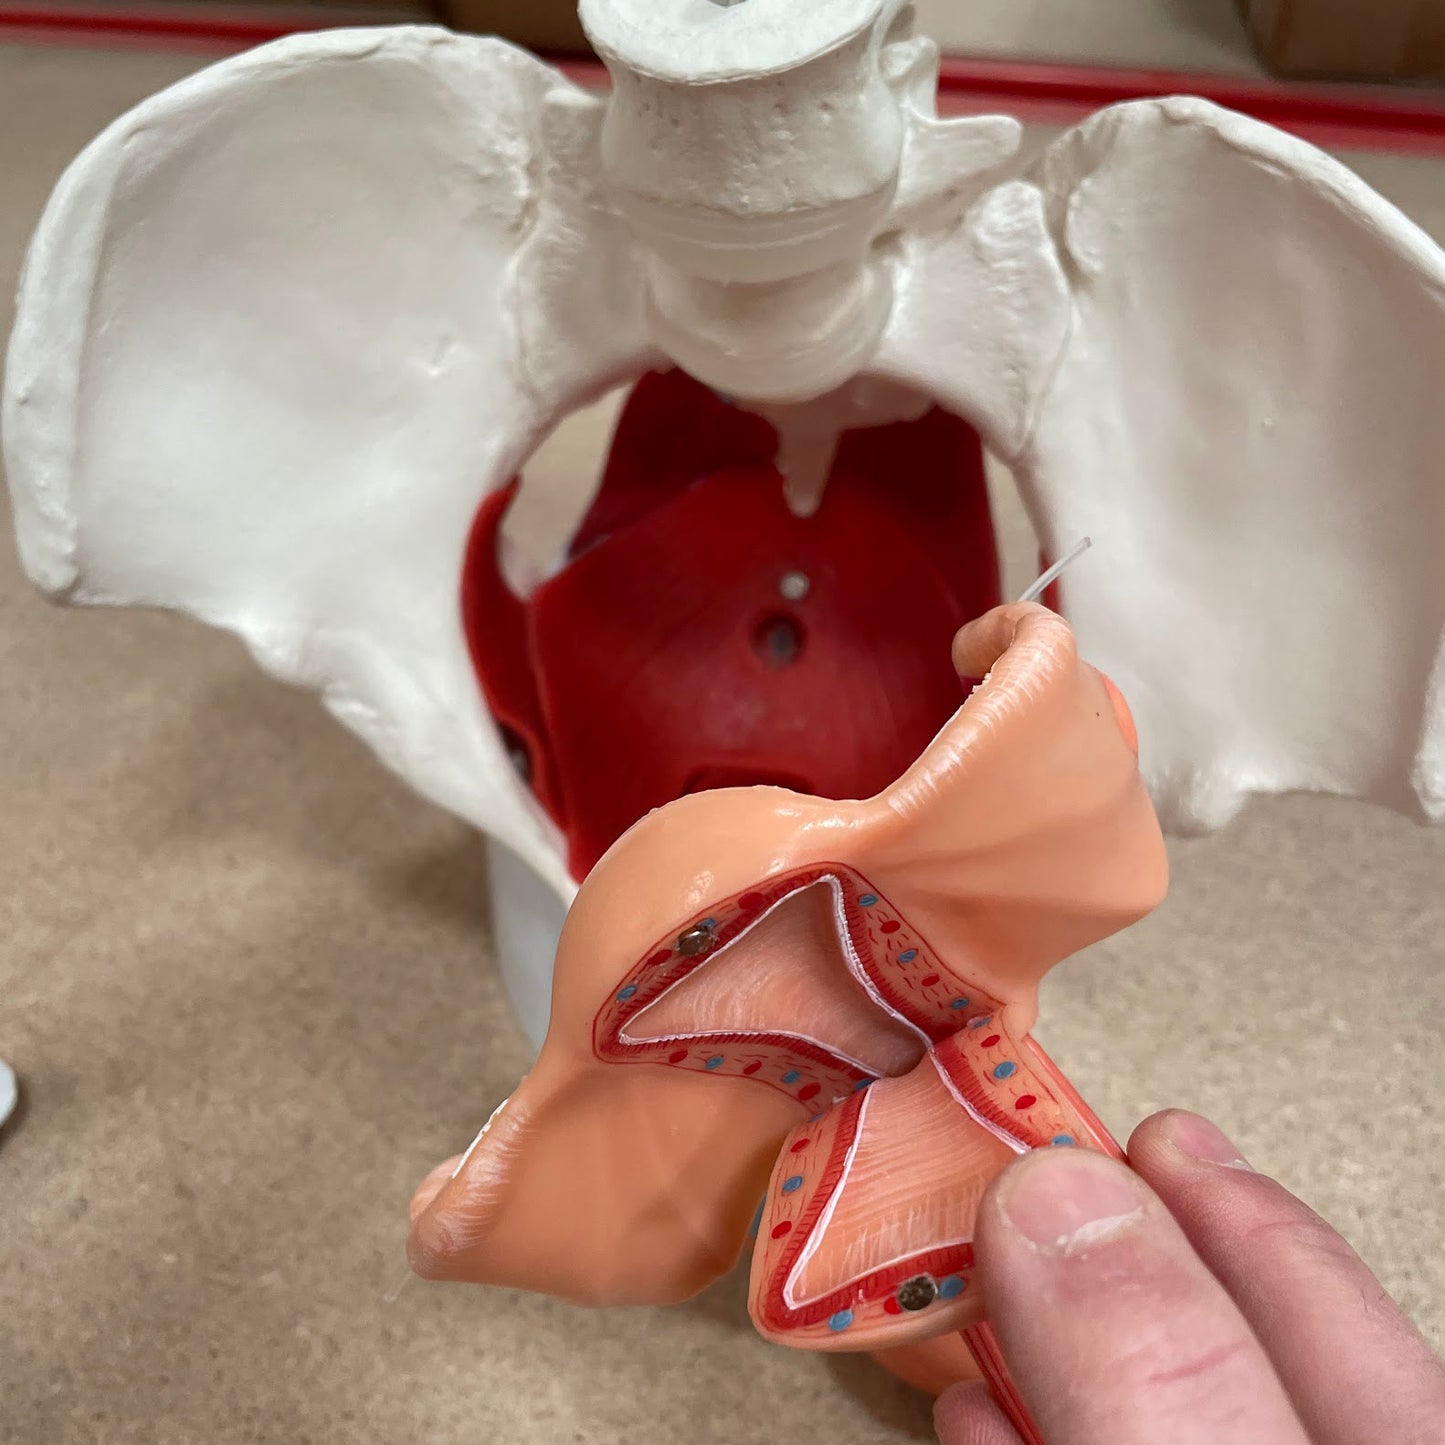 Bækkenmodel der viser bækken-bunden, de indre og ydre køns-organer samt blæren hos kvinden